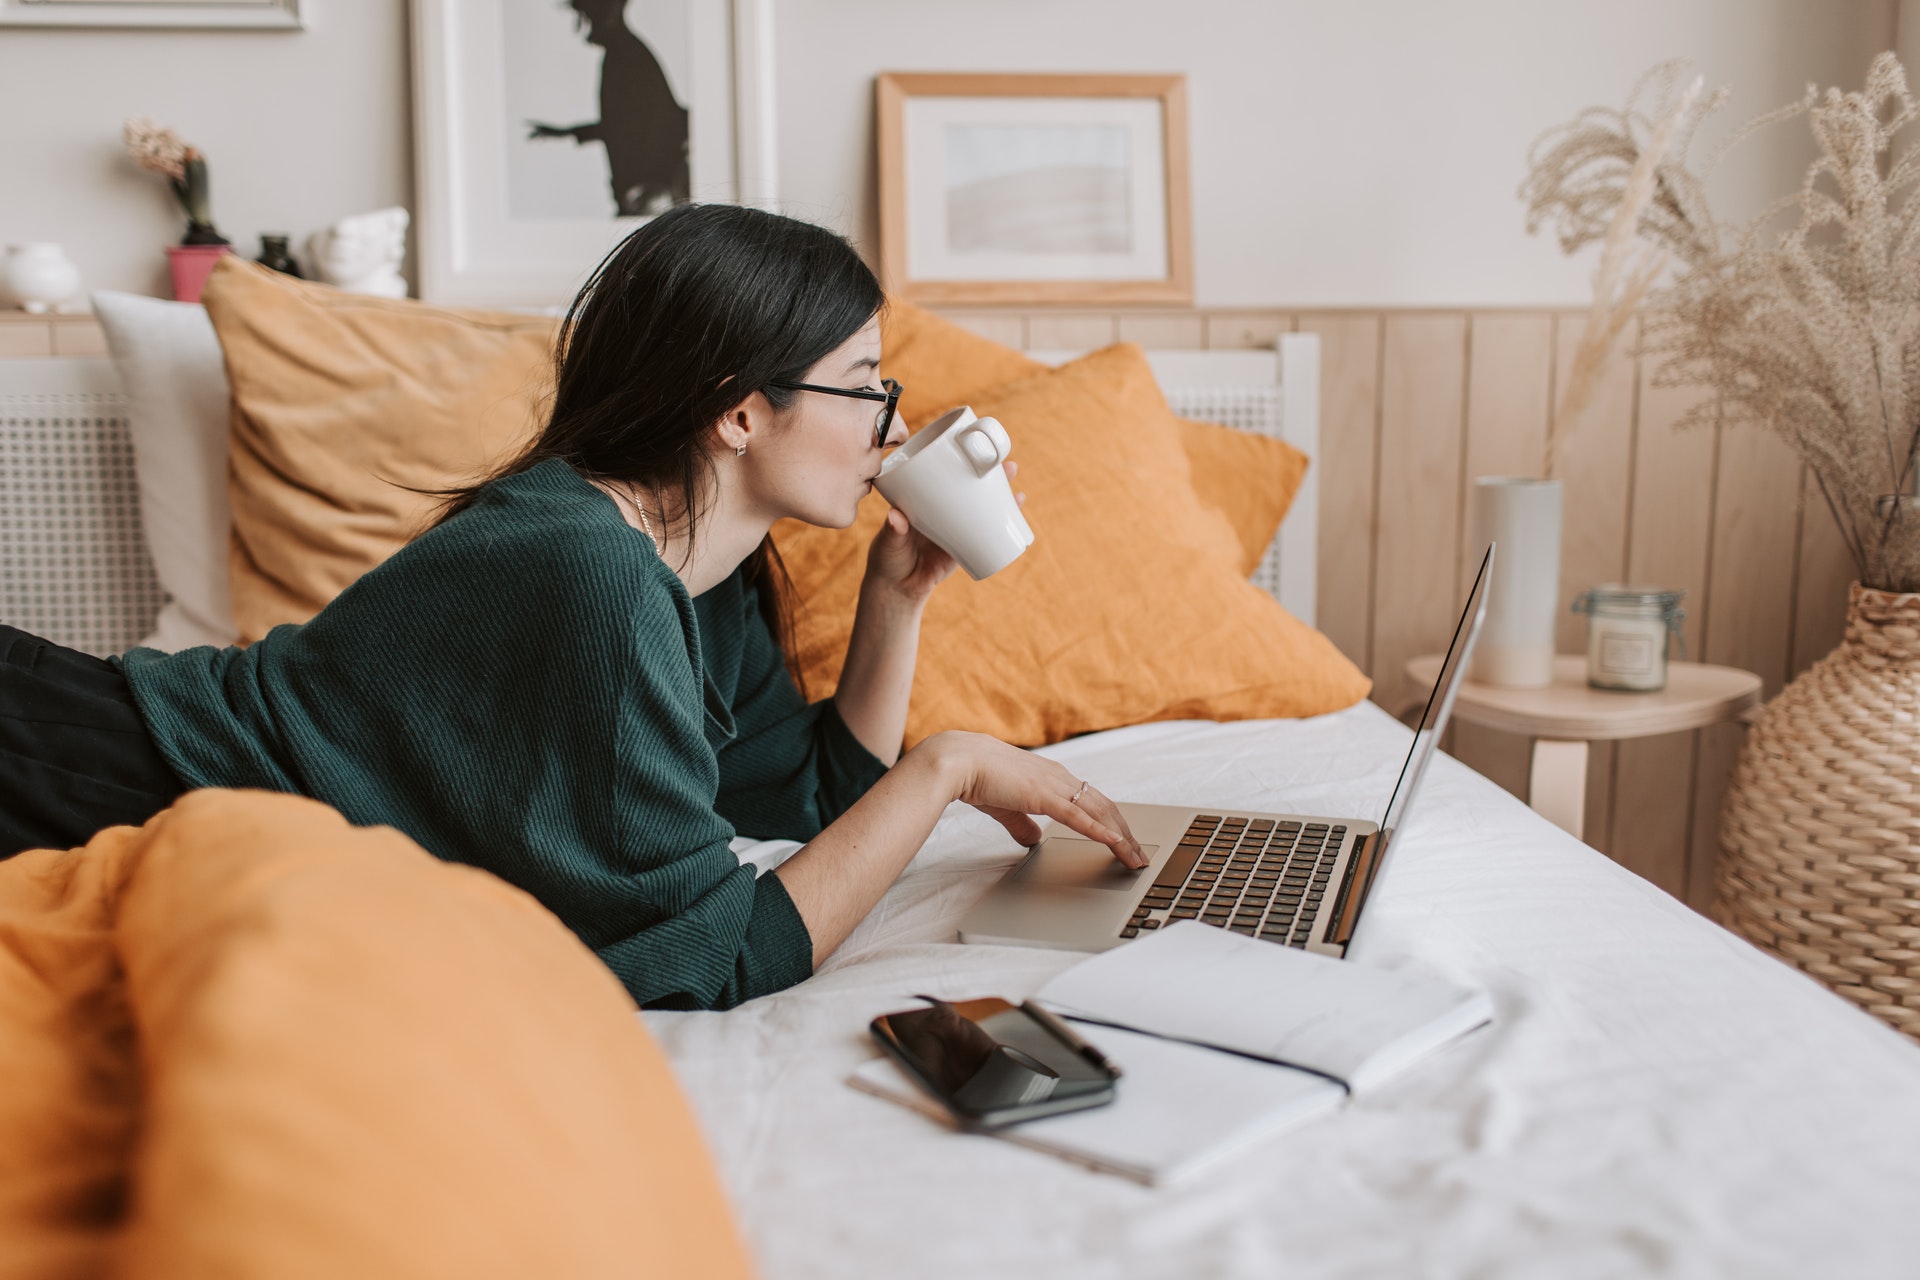 Imagem de uma mulher deitada na cama bebendo algo em uma caneca e olhando para o computador. Imagem ilustrativa texto nichos promissores.